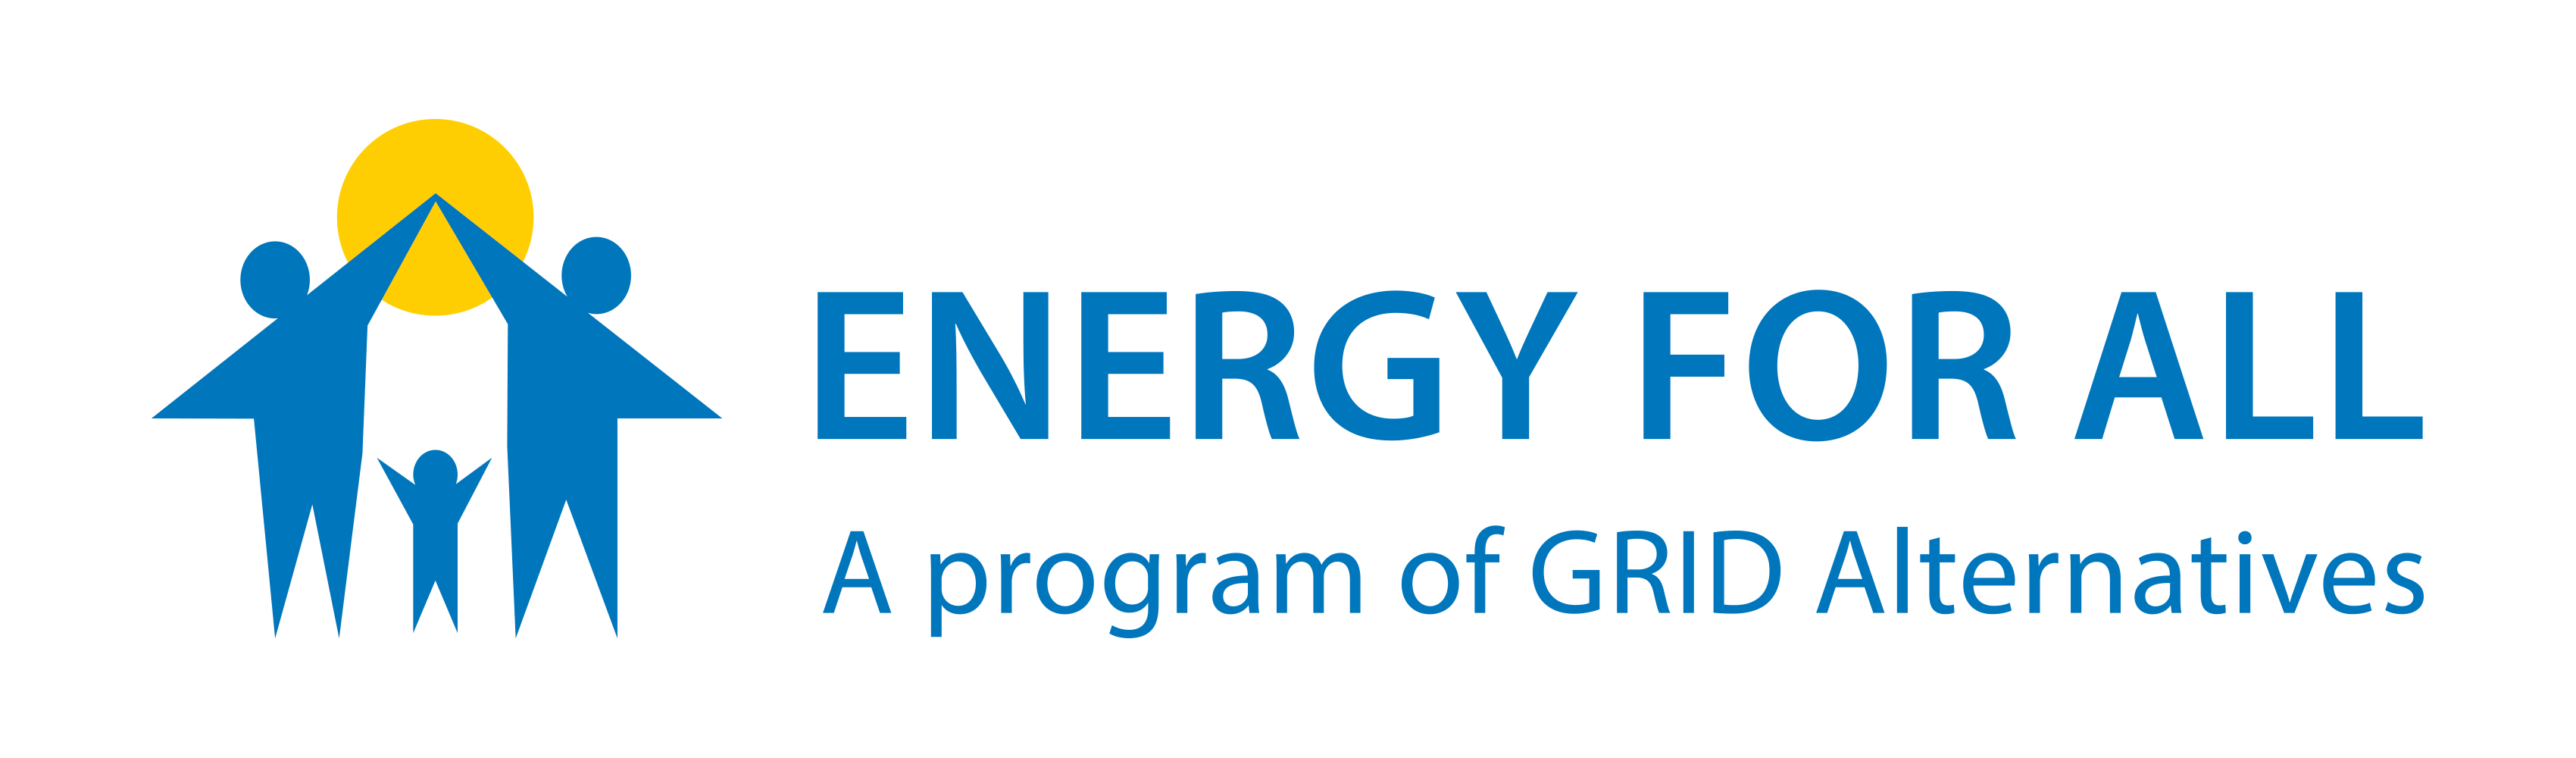 Logo, sagt Energy For All Ein Programm von GRID Alternatives, Illustration von zwei Eltern, die hinter der Sonne High-Five über ihr Kind geben